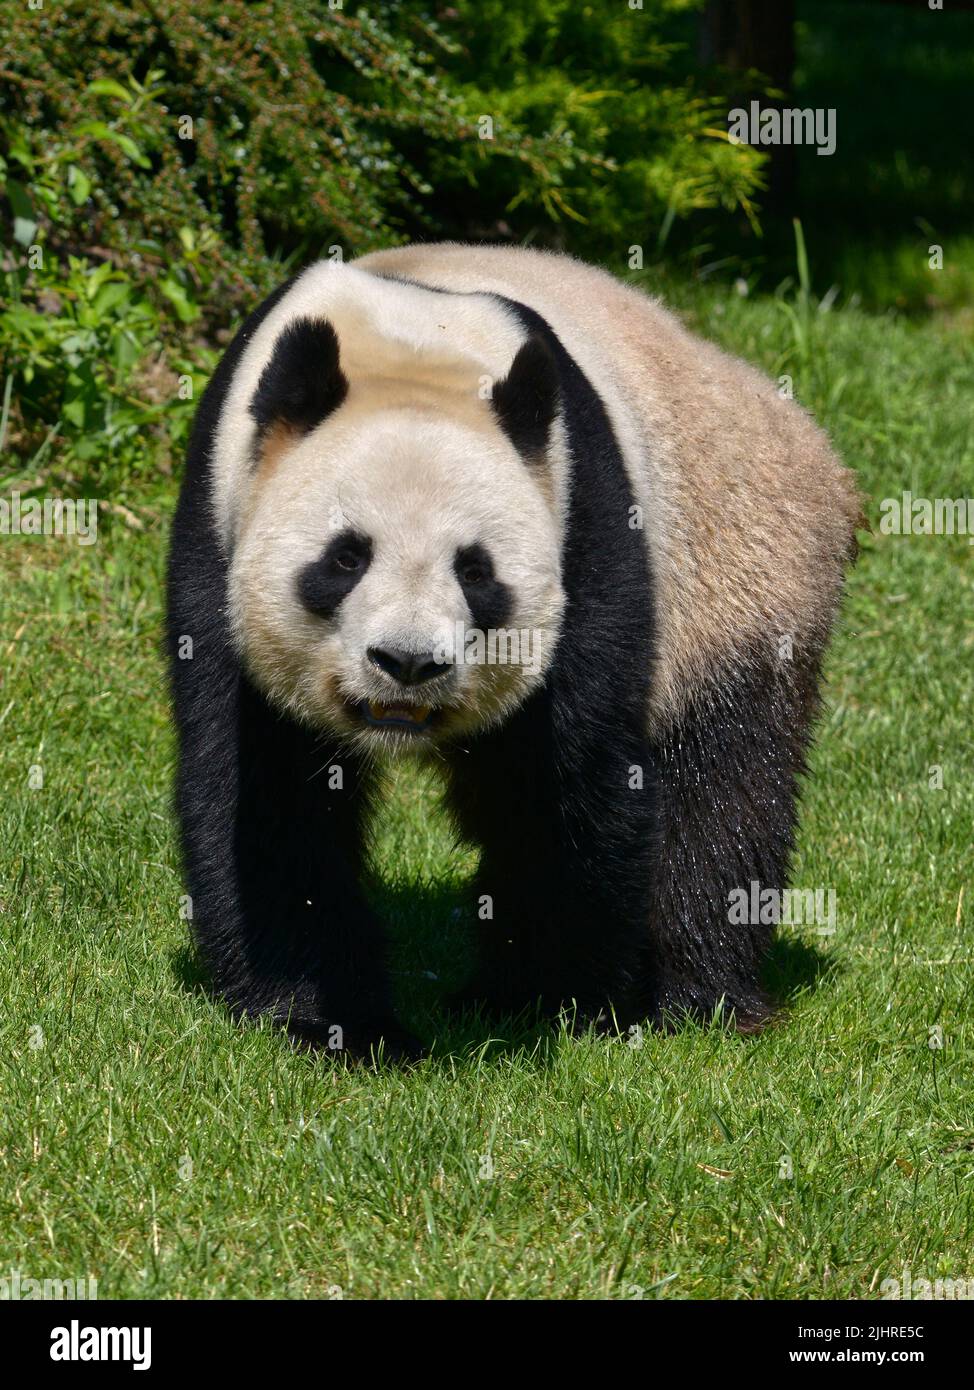 Panda gigante (Ailuropoda melanoleuca) de pie sobre la hierba y visto de frente Foto de stock